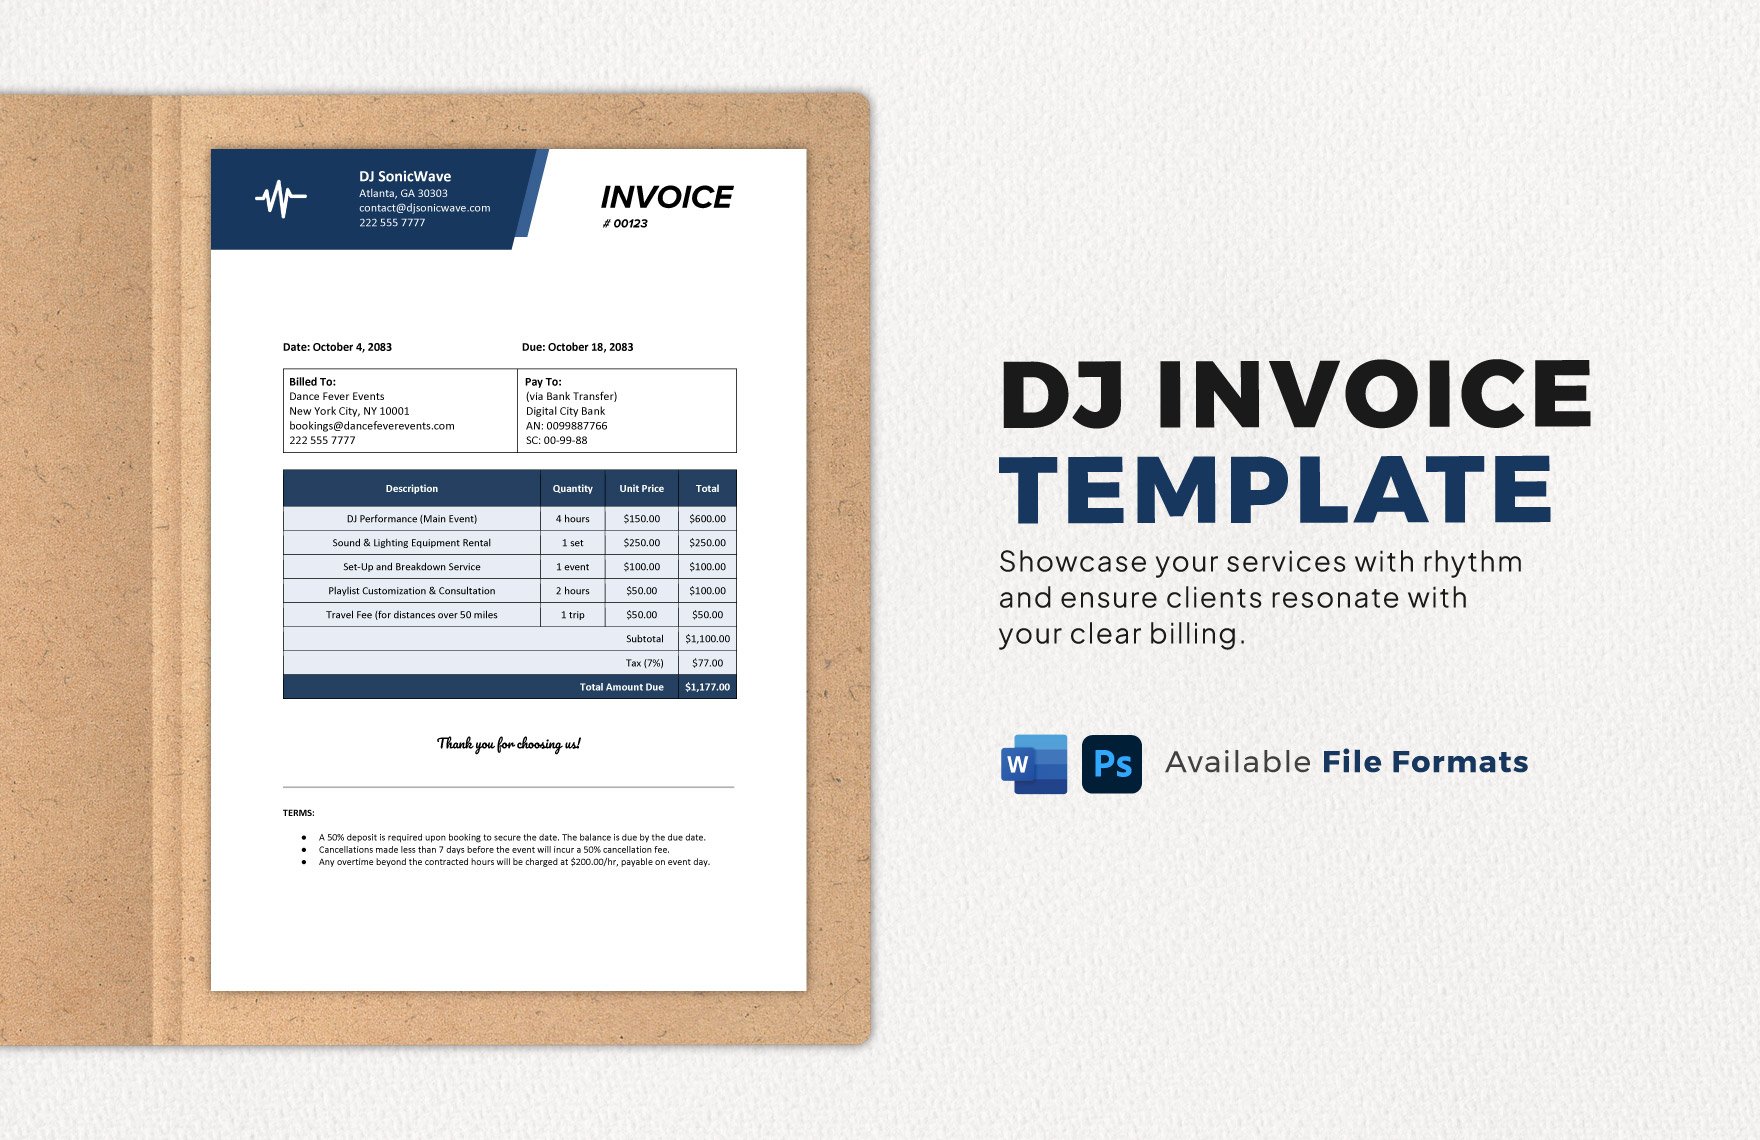 DJ Invoice Template